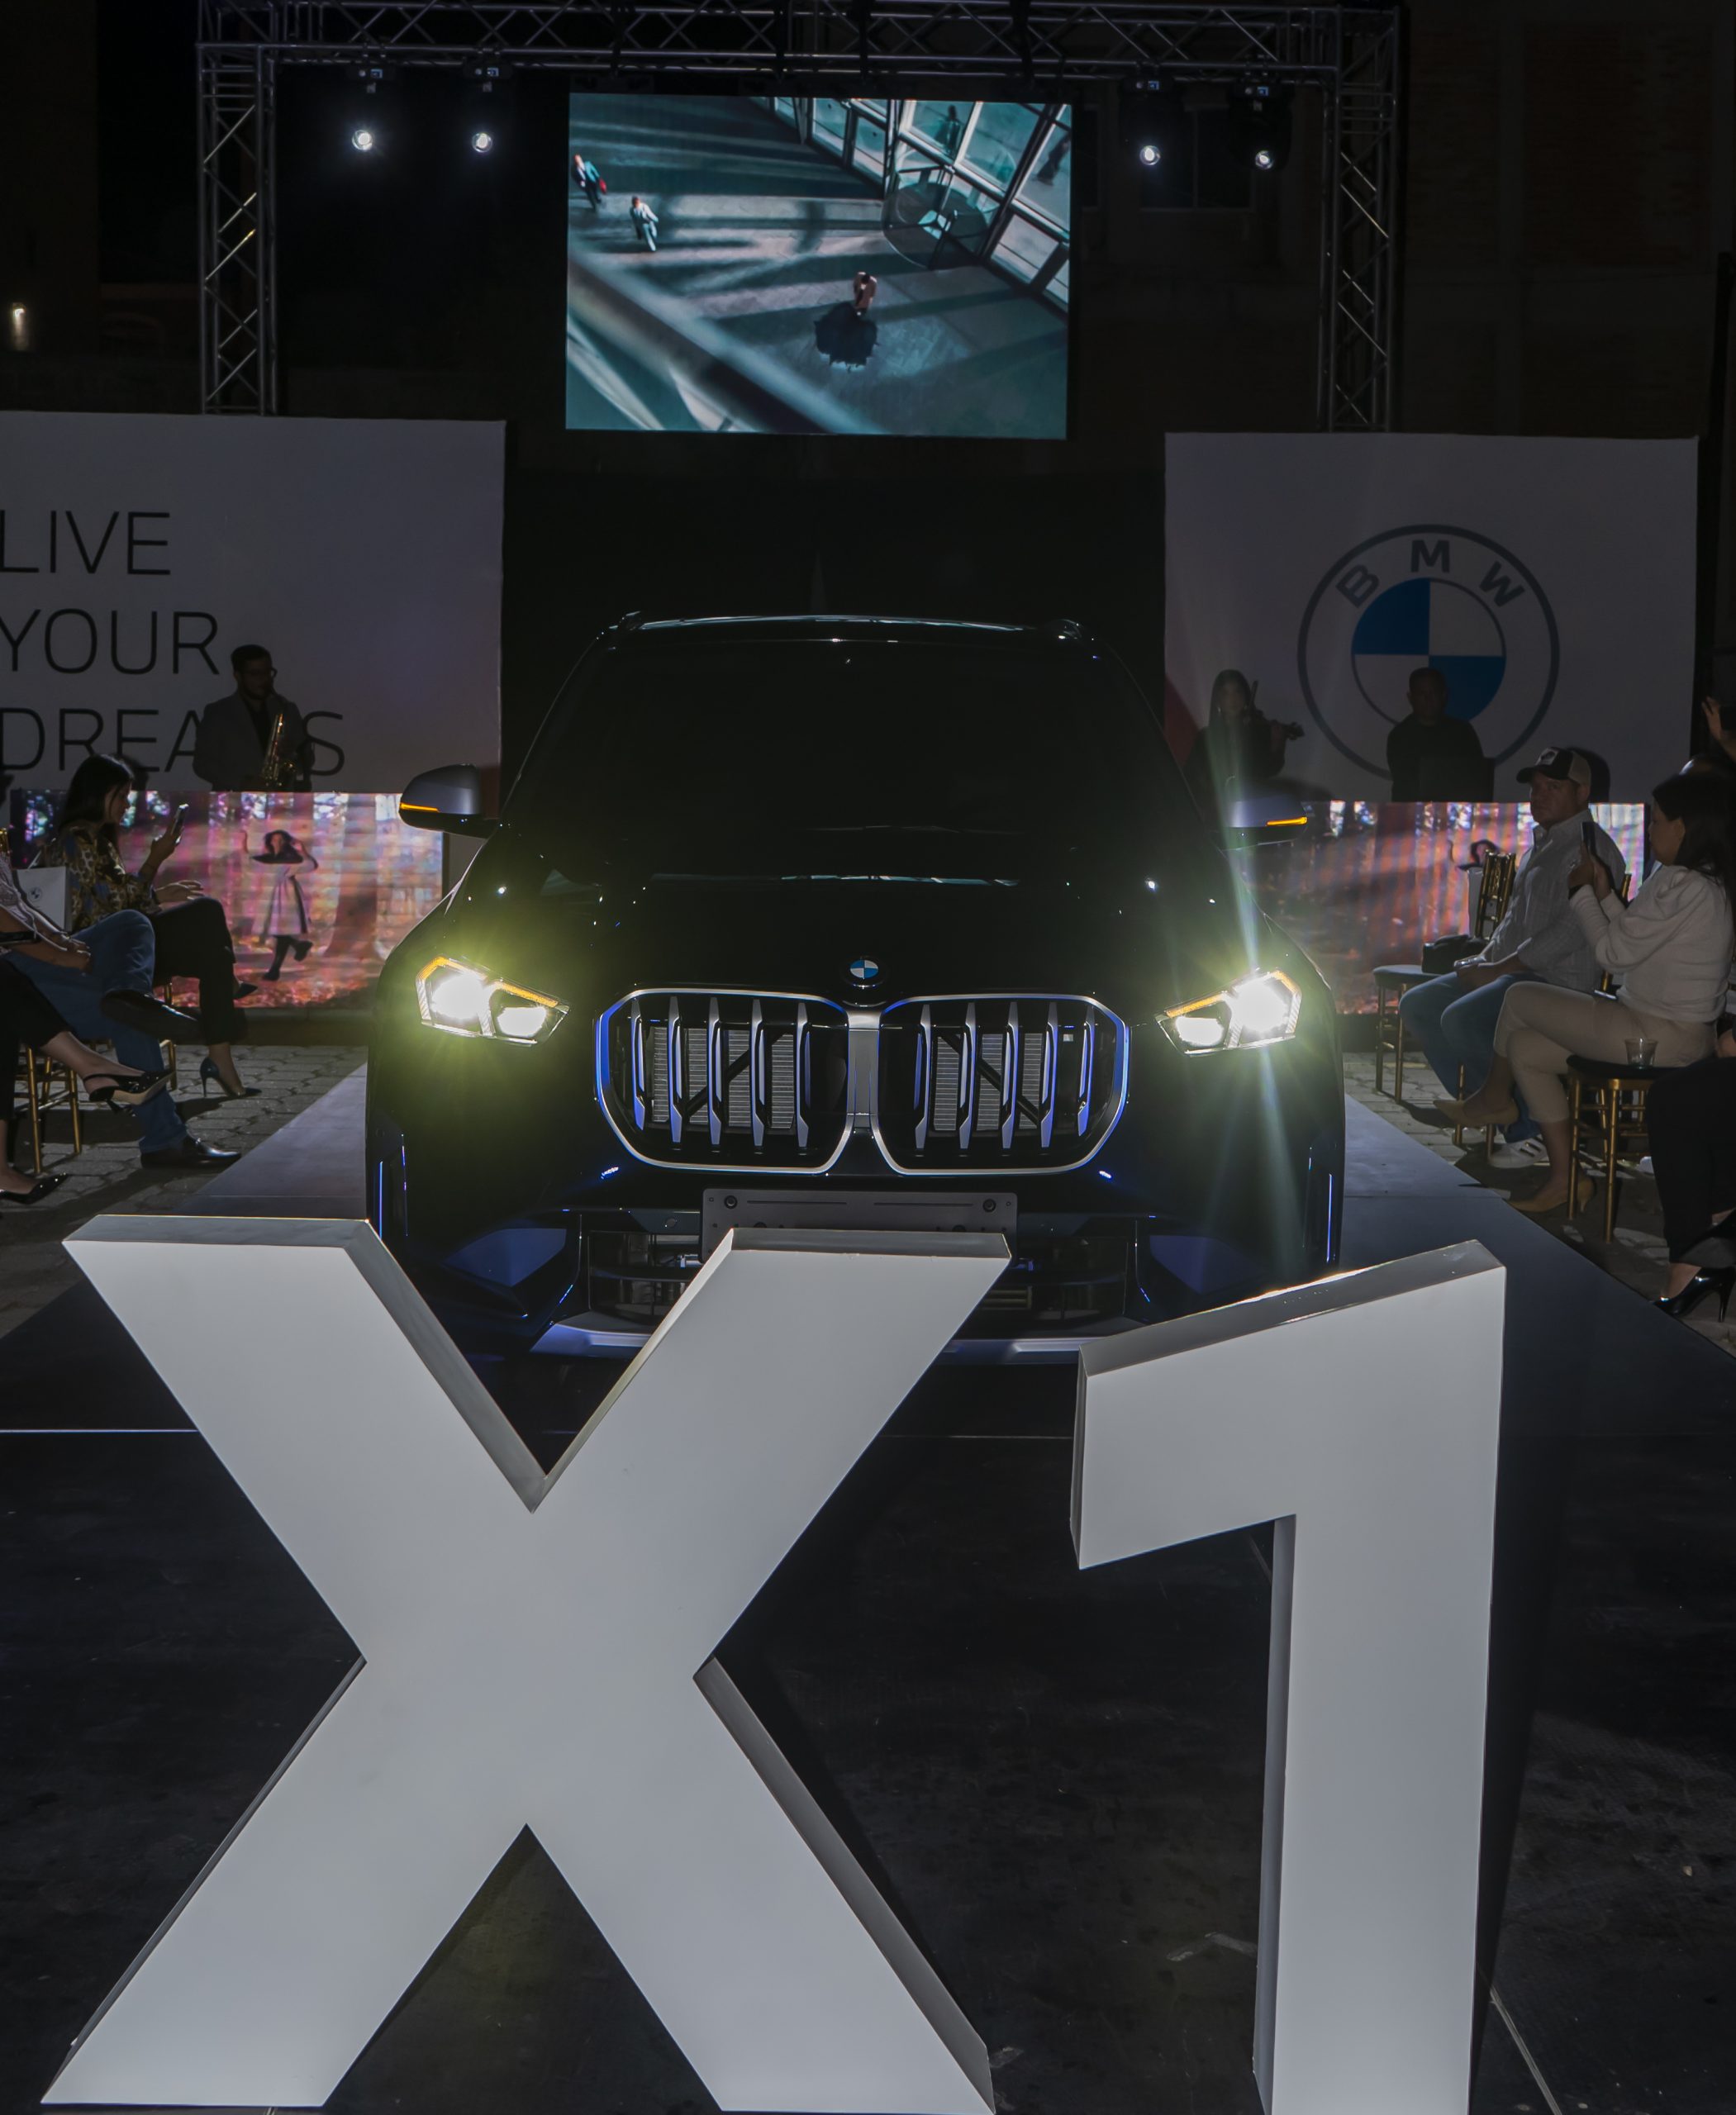 Excel anuncia la llegada de su nuevo modelo BMW X1.